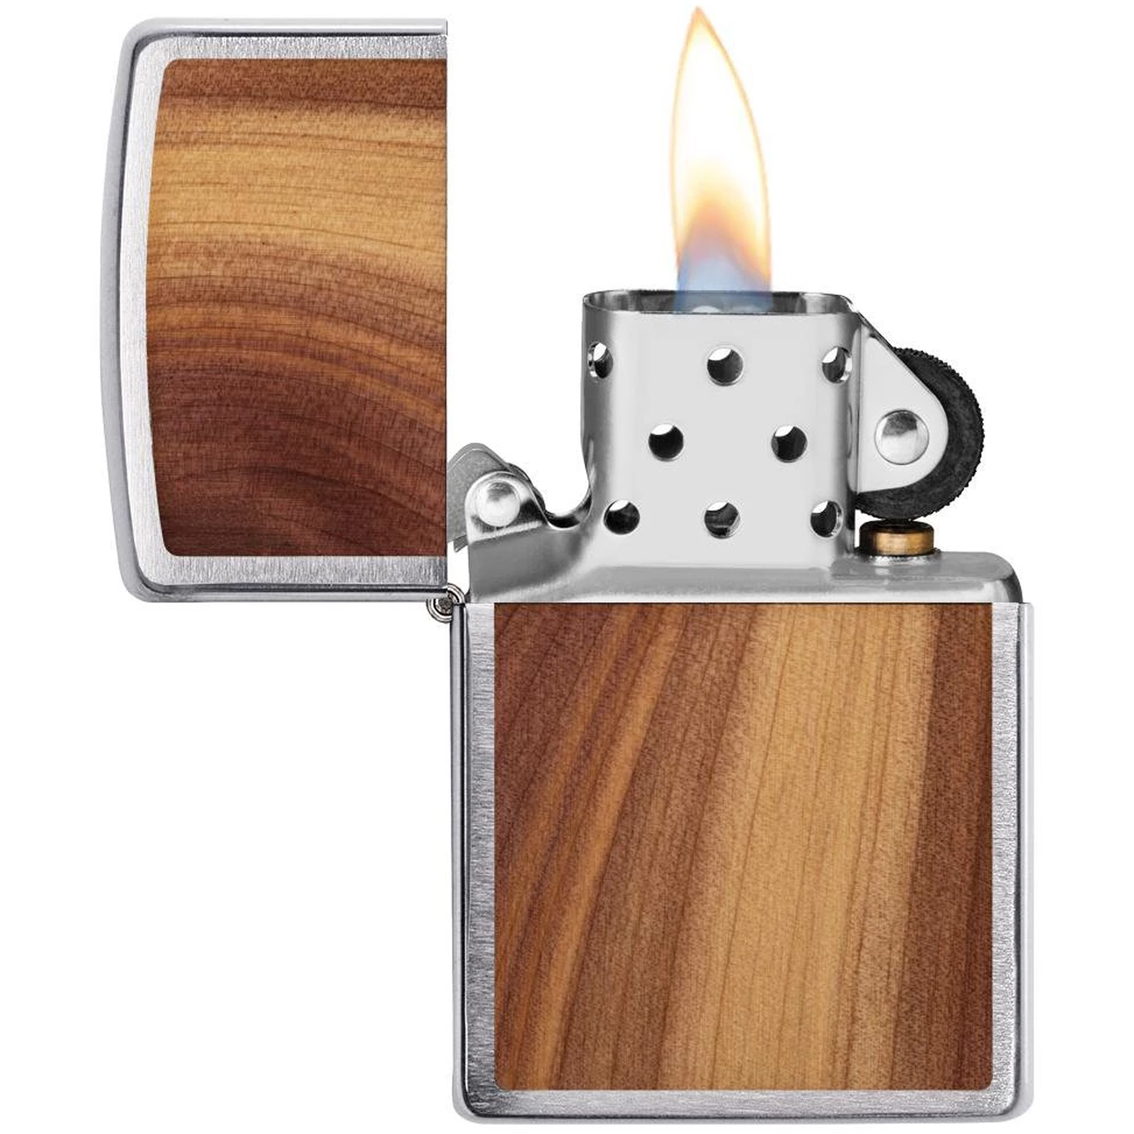 Zippo Cedar Emblem Wood Chuck Lighter - Image 3 of 3